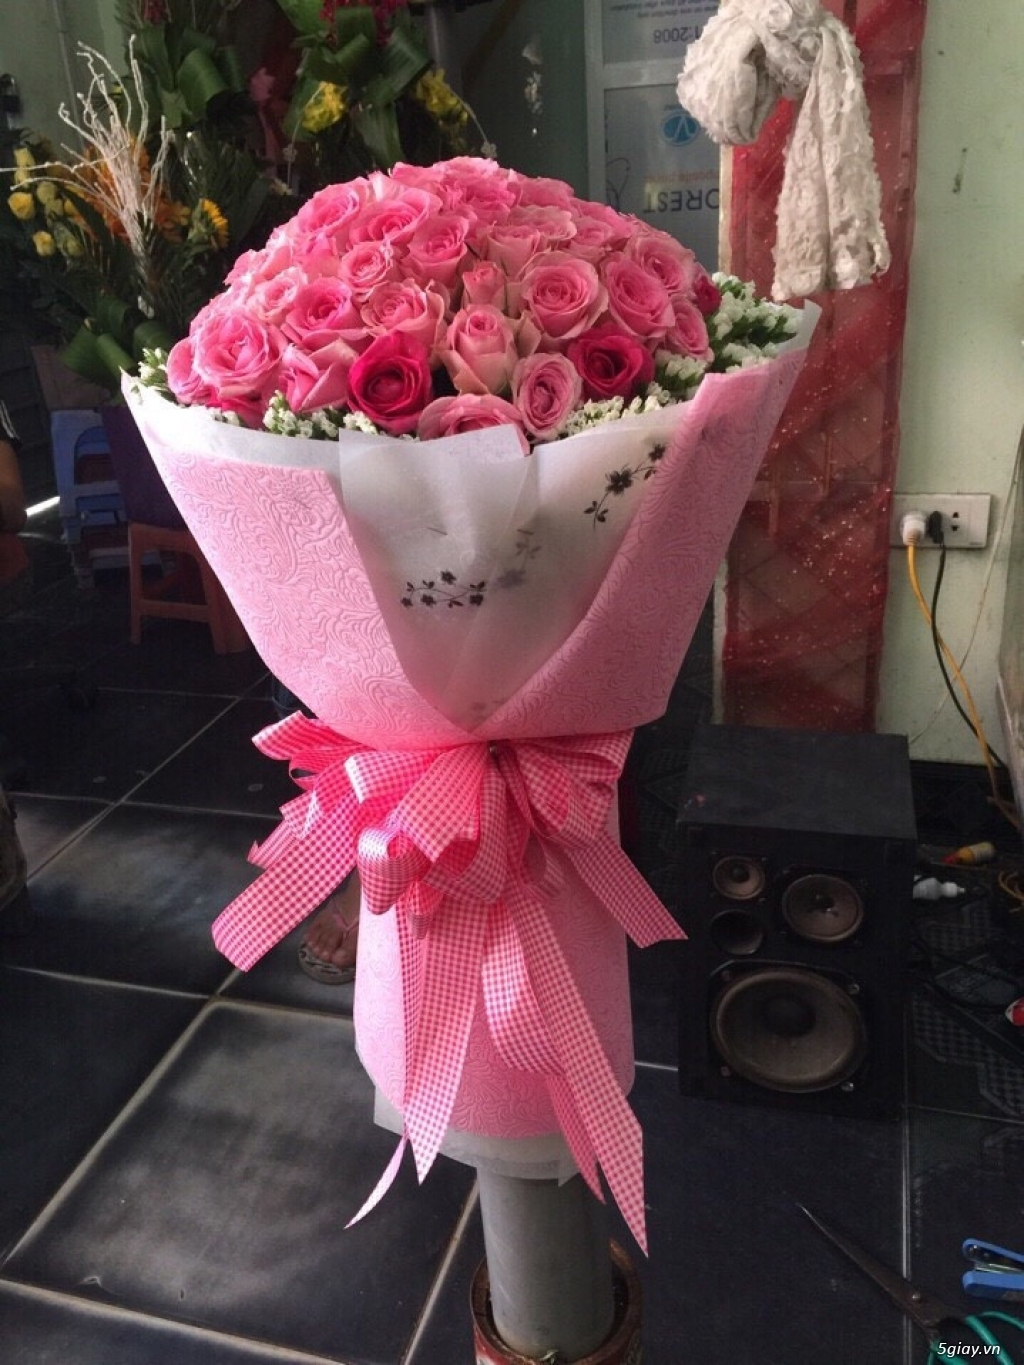 Điện hoa Rạch Giá, Shop hoa Kiên Giang, Cửa hàng hoa tại Kiên Giang 0976431039 - 31